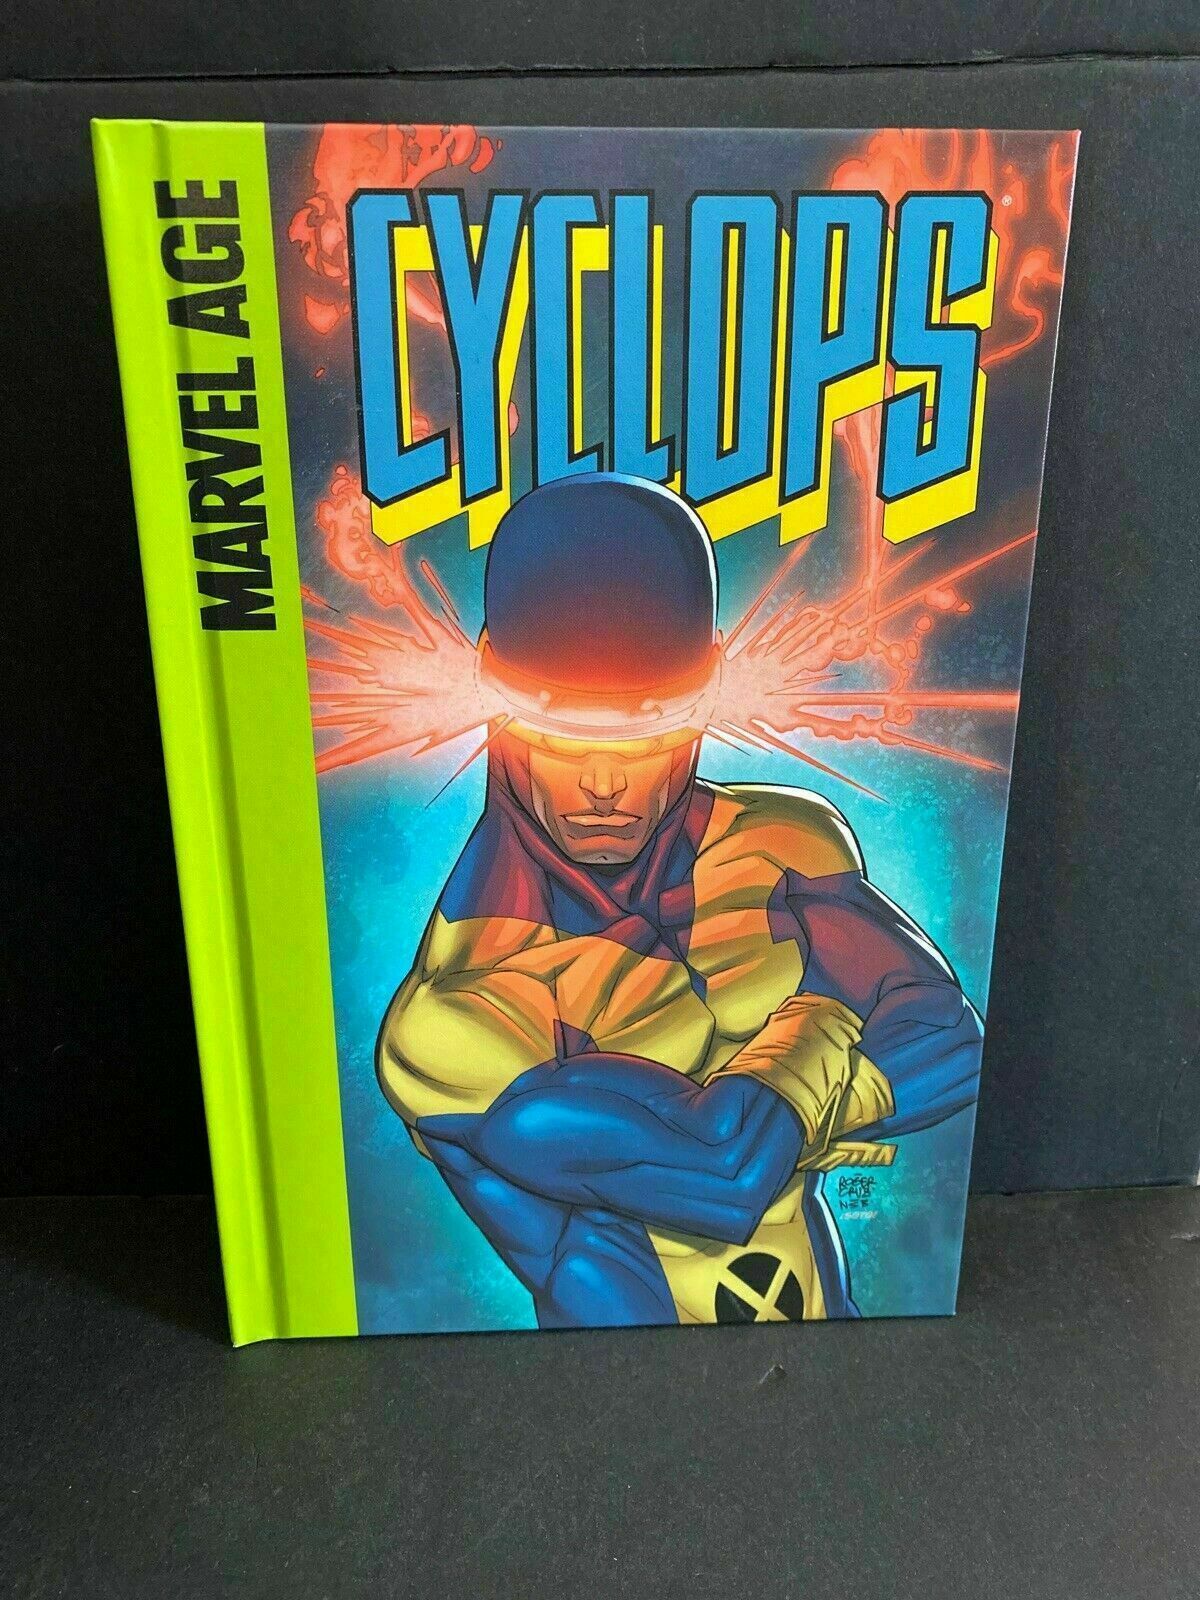 x men cyclops first class